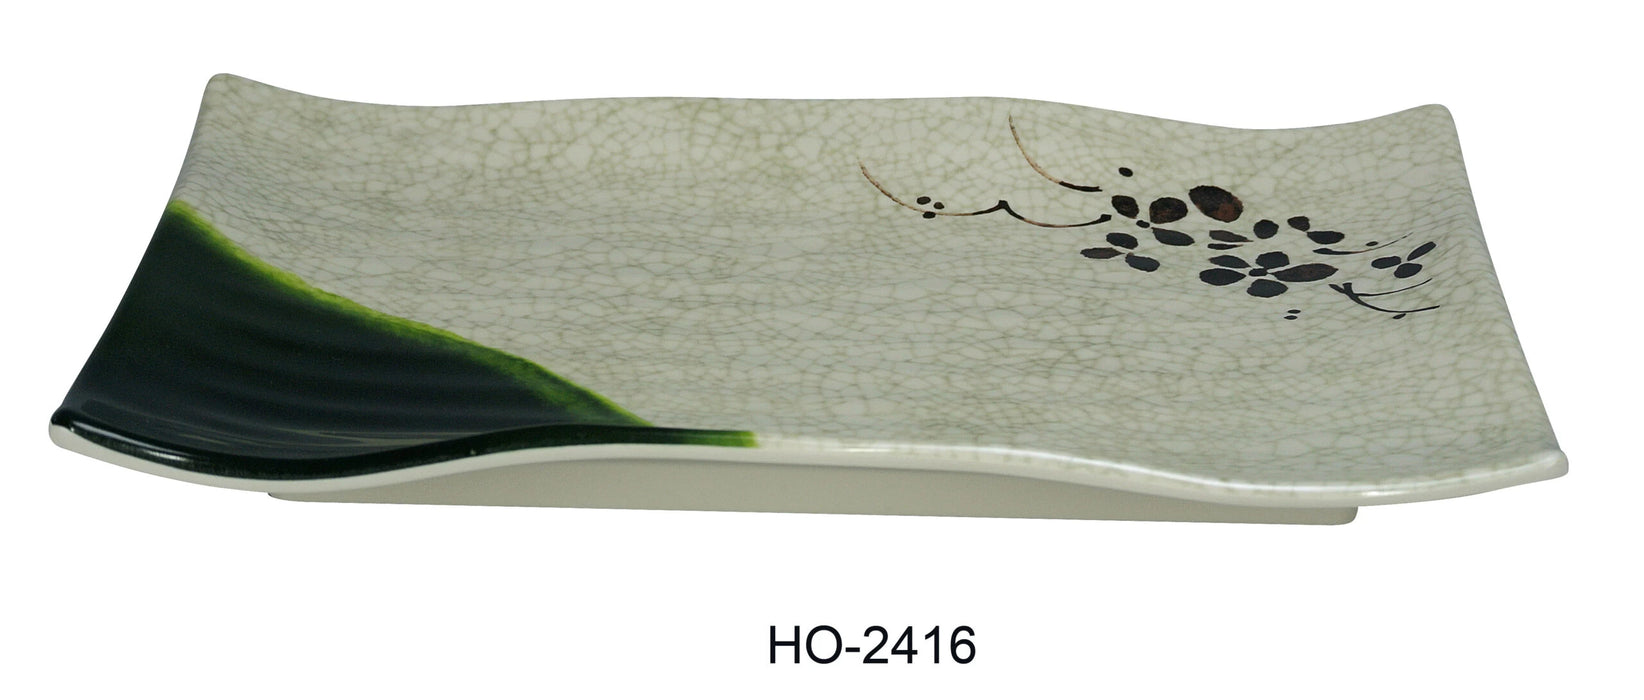 Yanco HO-2416 Honda Ripple Plate, Rectangular, 16″ Length, 5.5″ Width, Melamine, Pack of 12